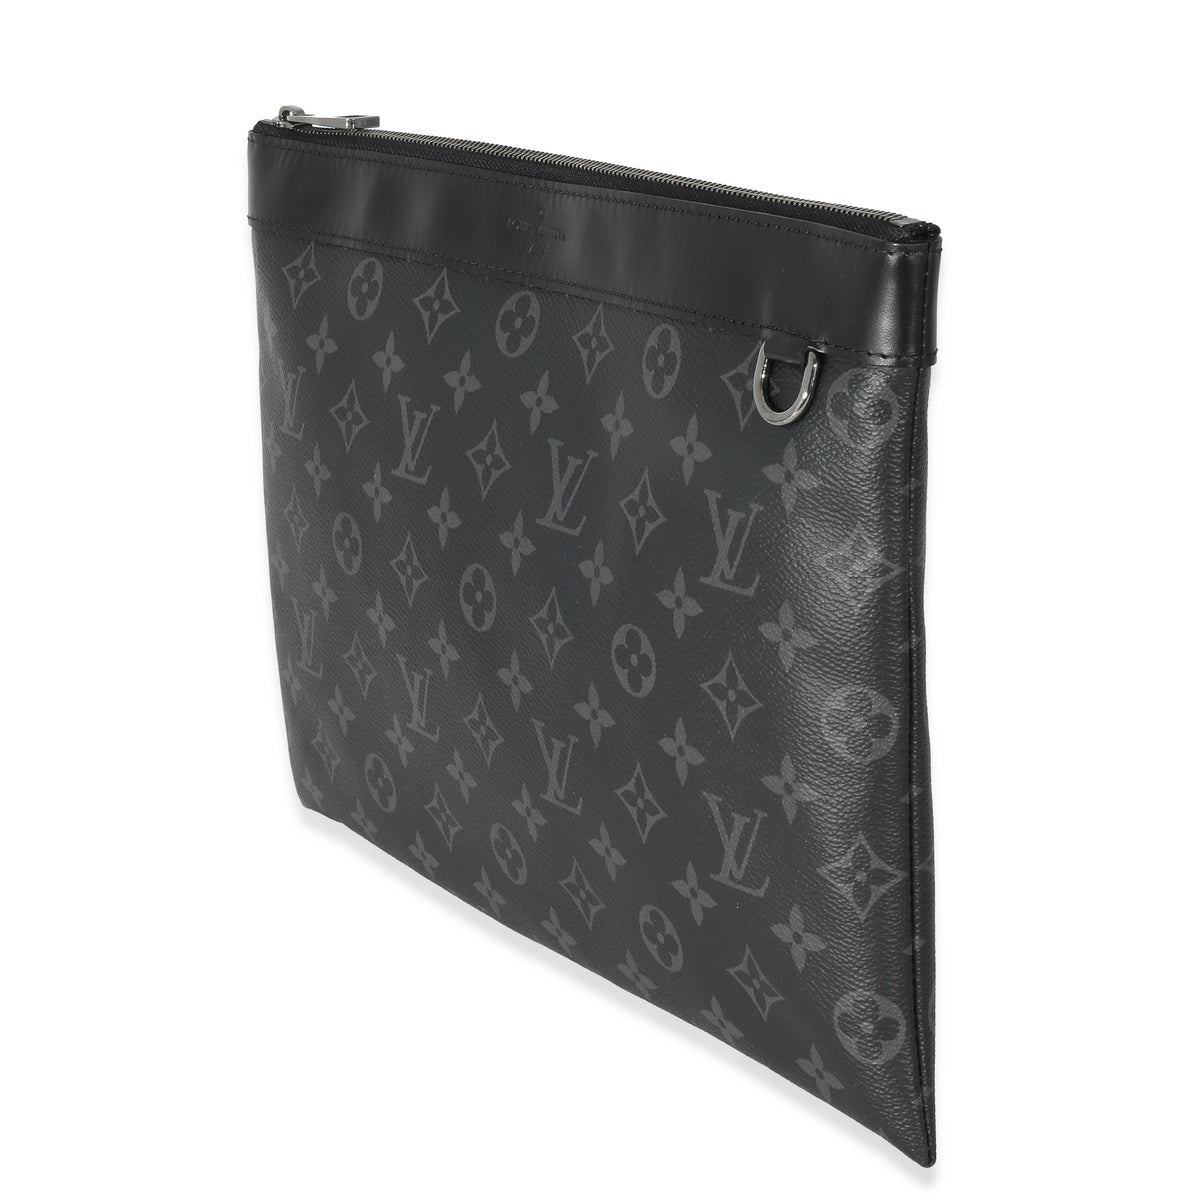 Louis Vuitton Eclipse Pochette Discovery Pm Clutch Bag M62291 mens